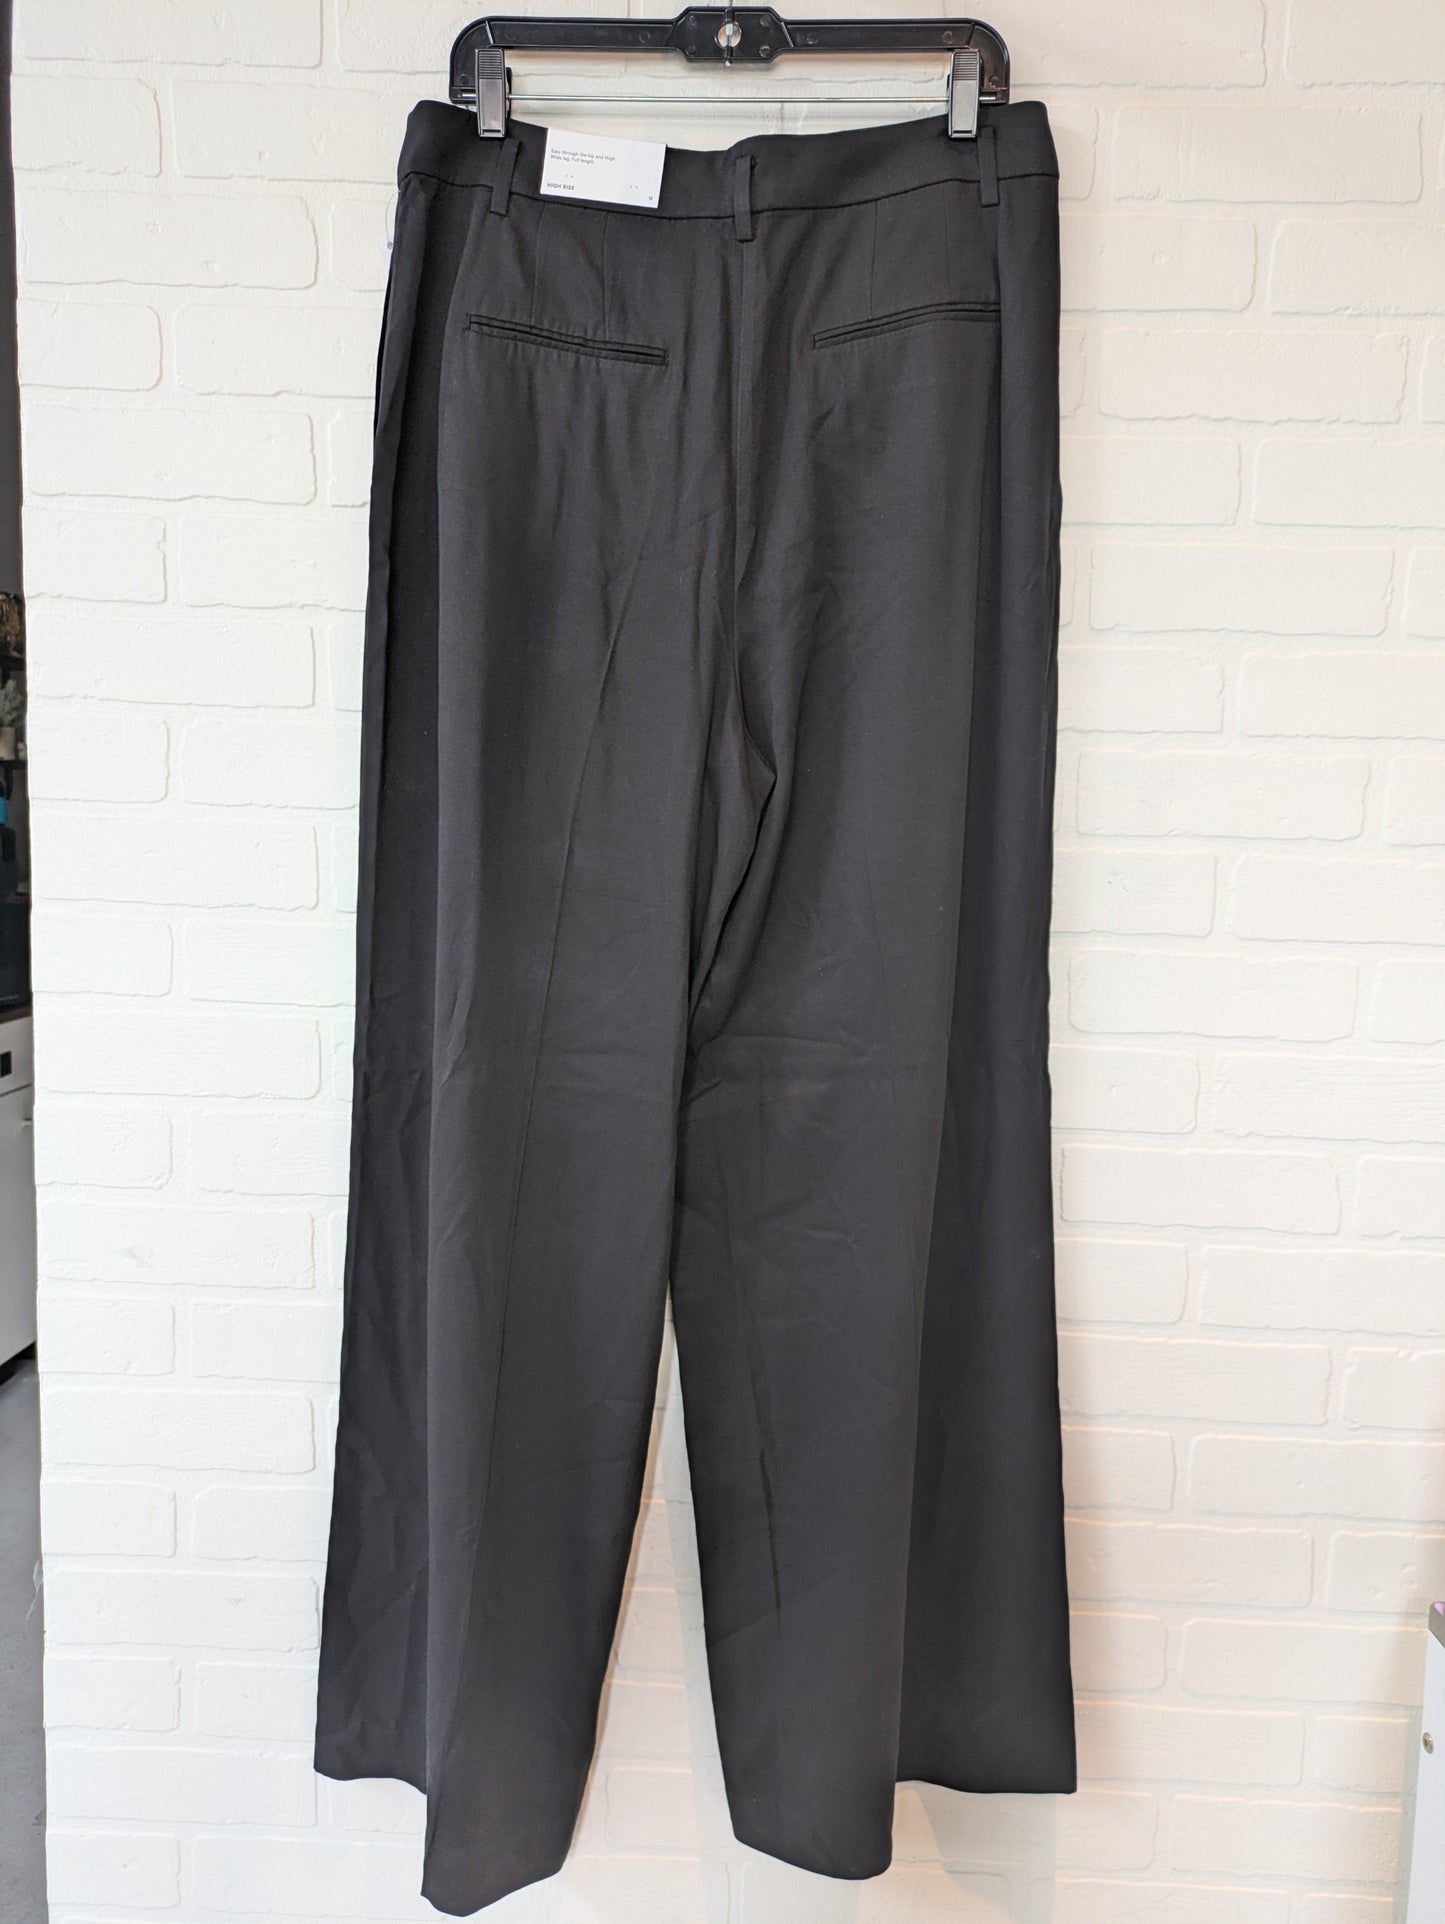 Black Pants Dress Ann Taylor, Size 12